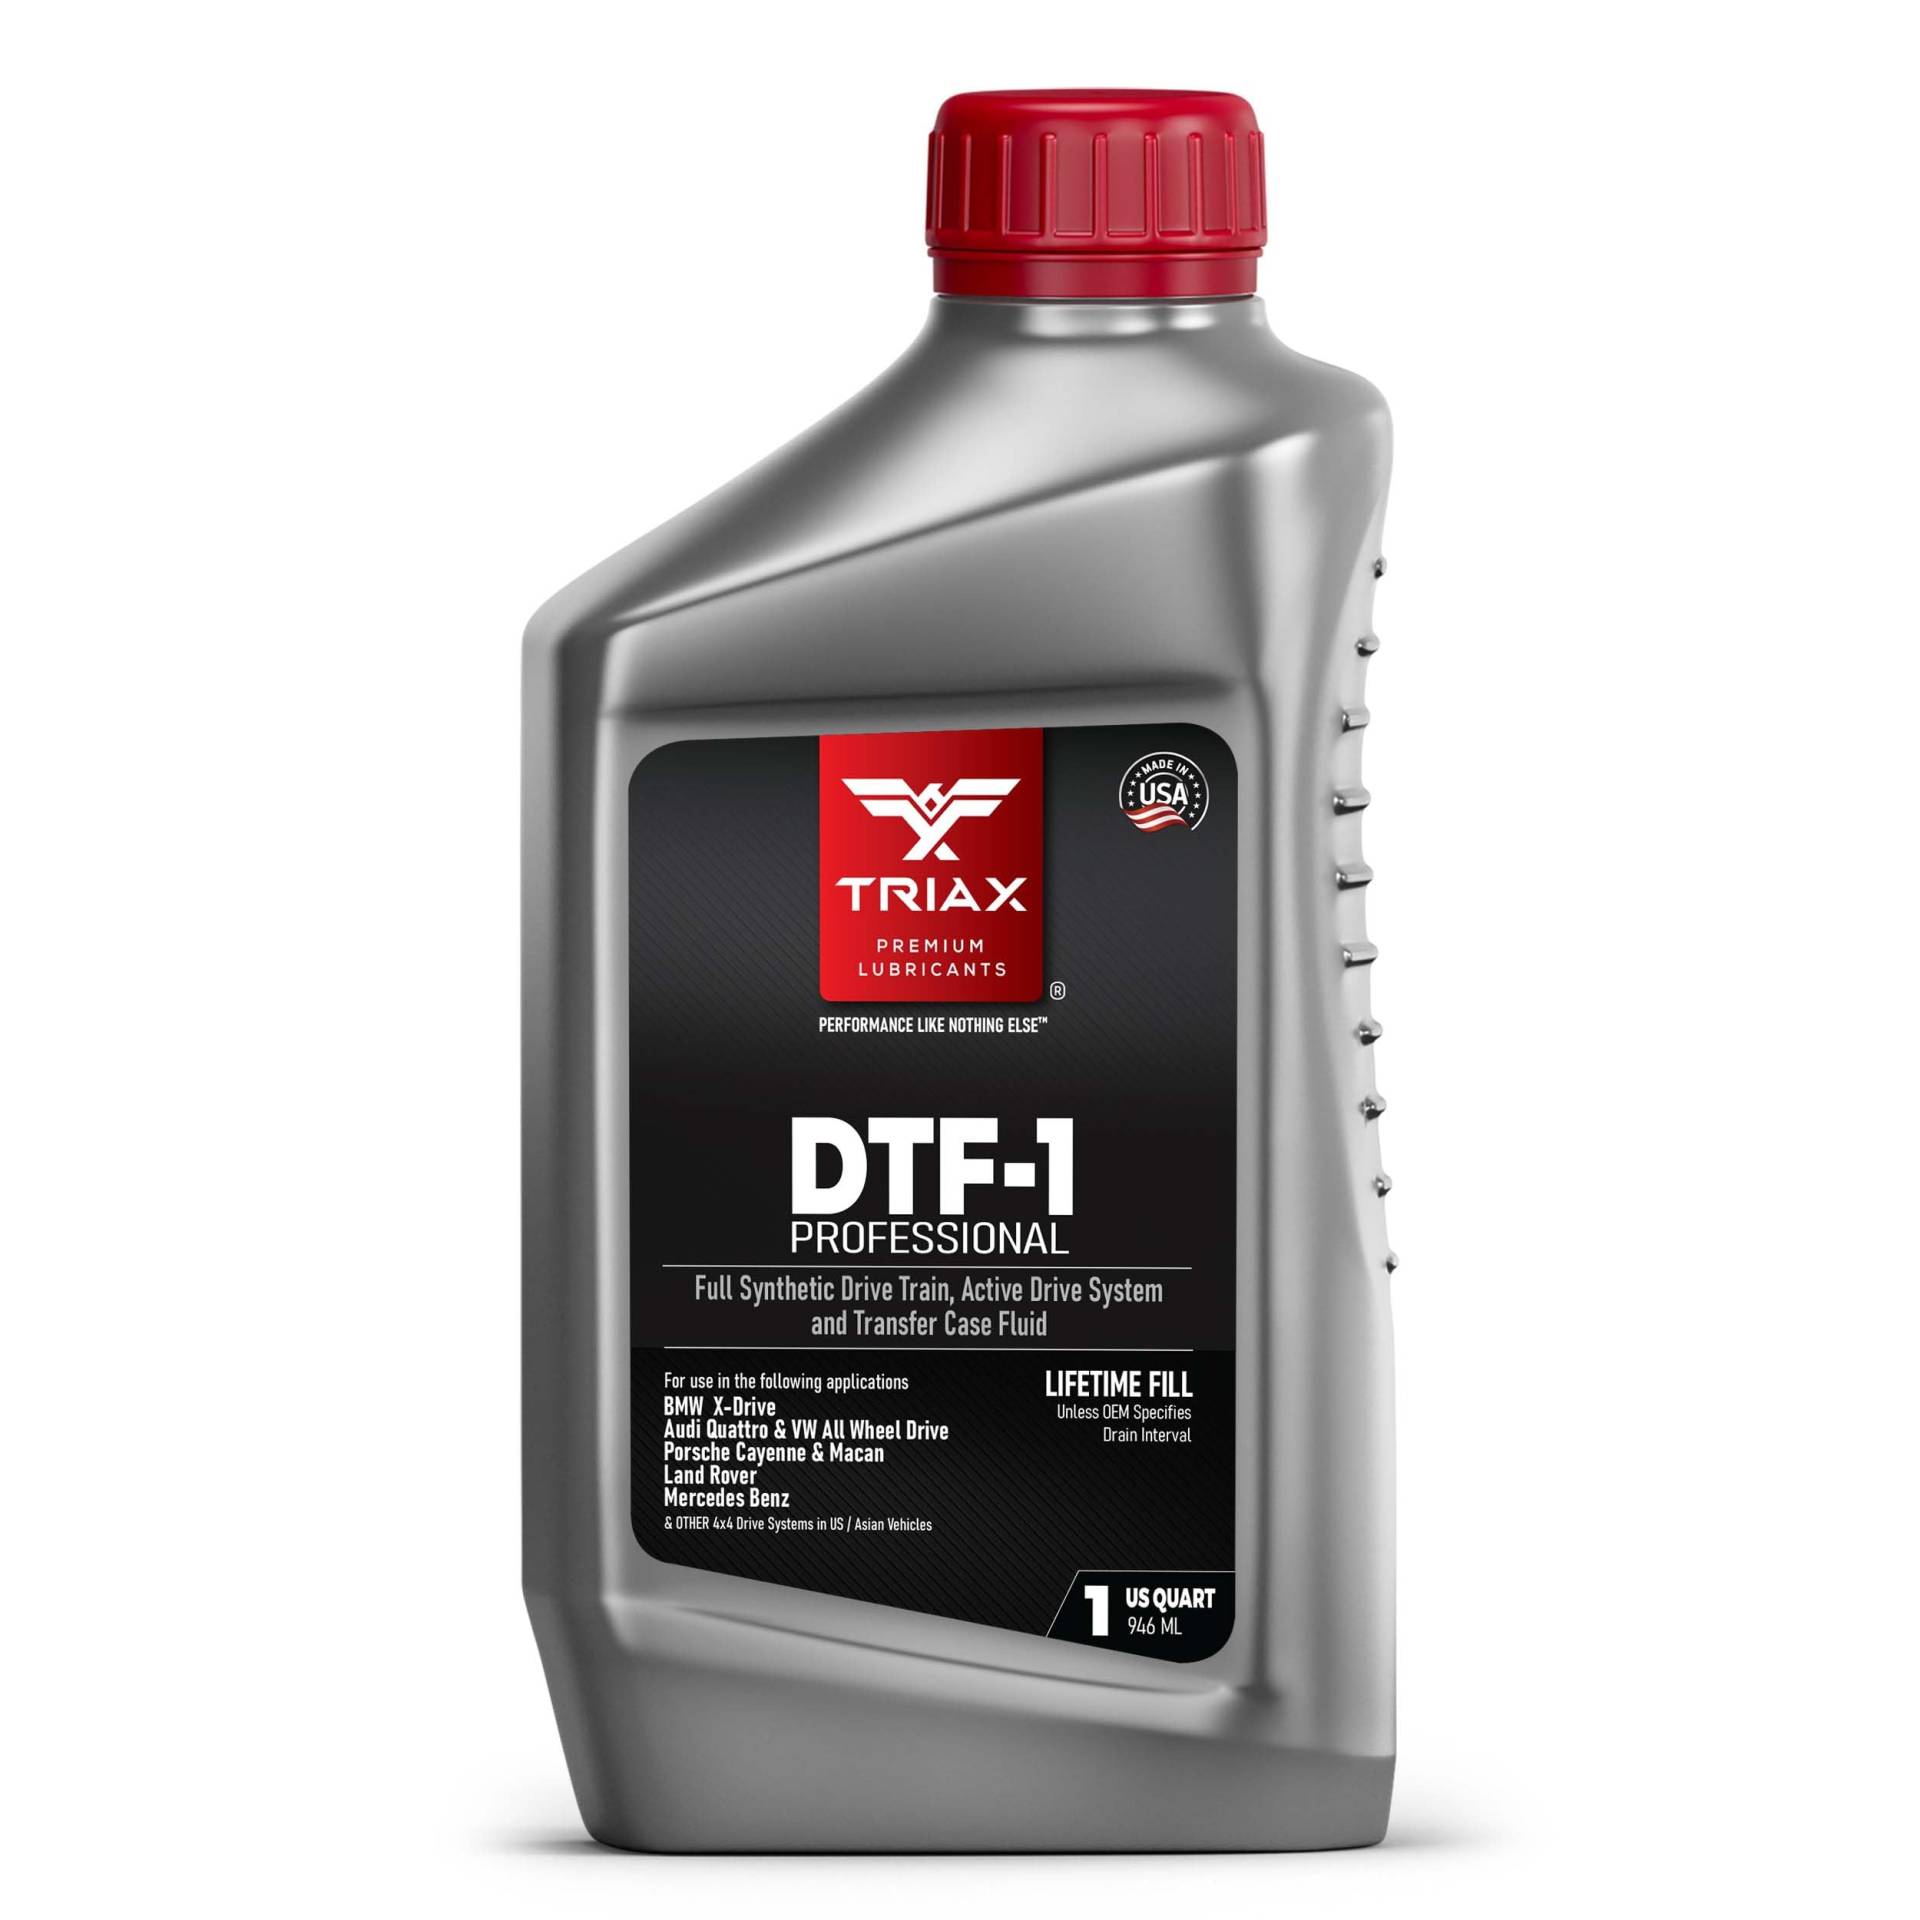 TRIAX DTF-1 Verteilergetriebeöl vollsynthetisch | Lebenslange Füllung | Die ganze Saison bis zu -50 C | Kompatibel mit BMW Xdrive, Audi/VW Quattro, Range Rover, Ford, Porsche und viele andere von TRIAX